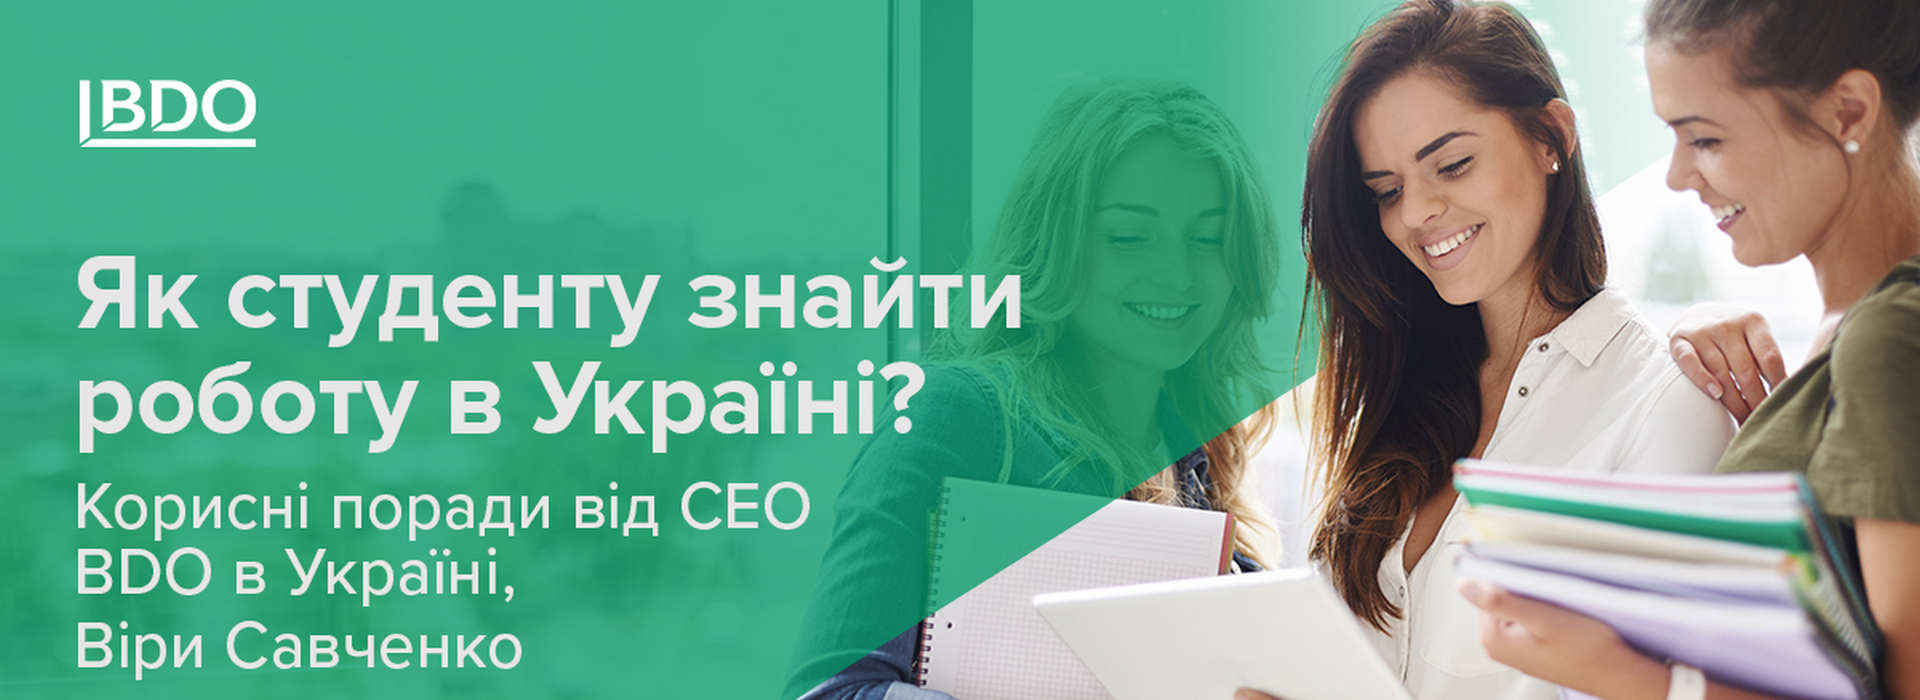 Як студенту знайти роботу в Україні? Корисні поради від CEO BDO в Україні, Віри Савченко